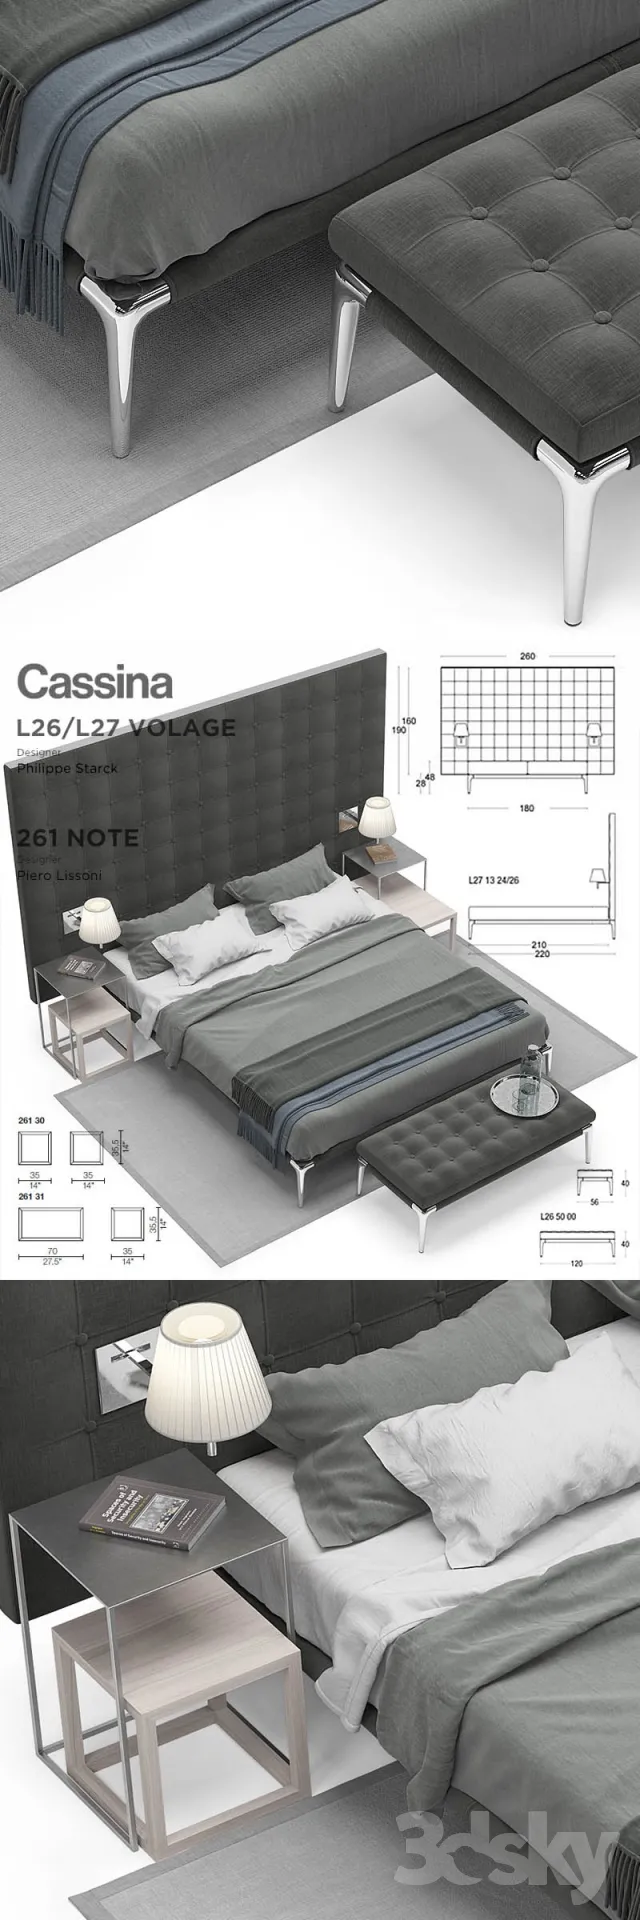 3DSKY MODELS – BED 3D MODELS – 114